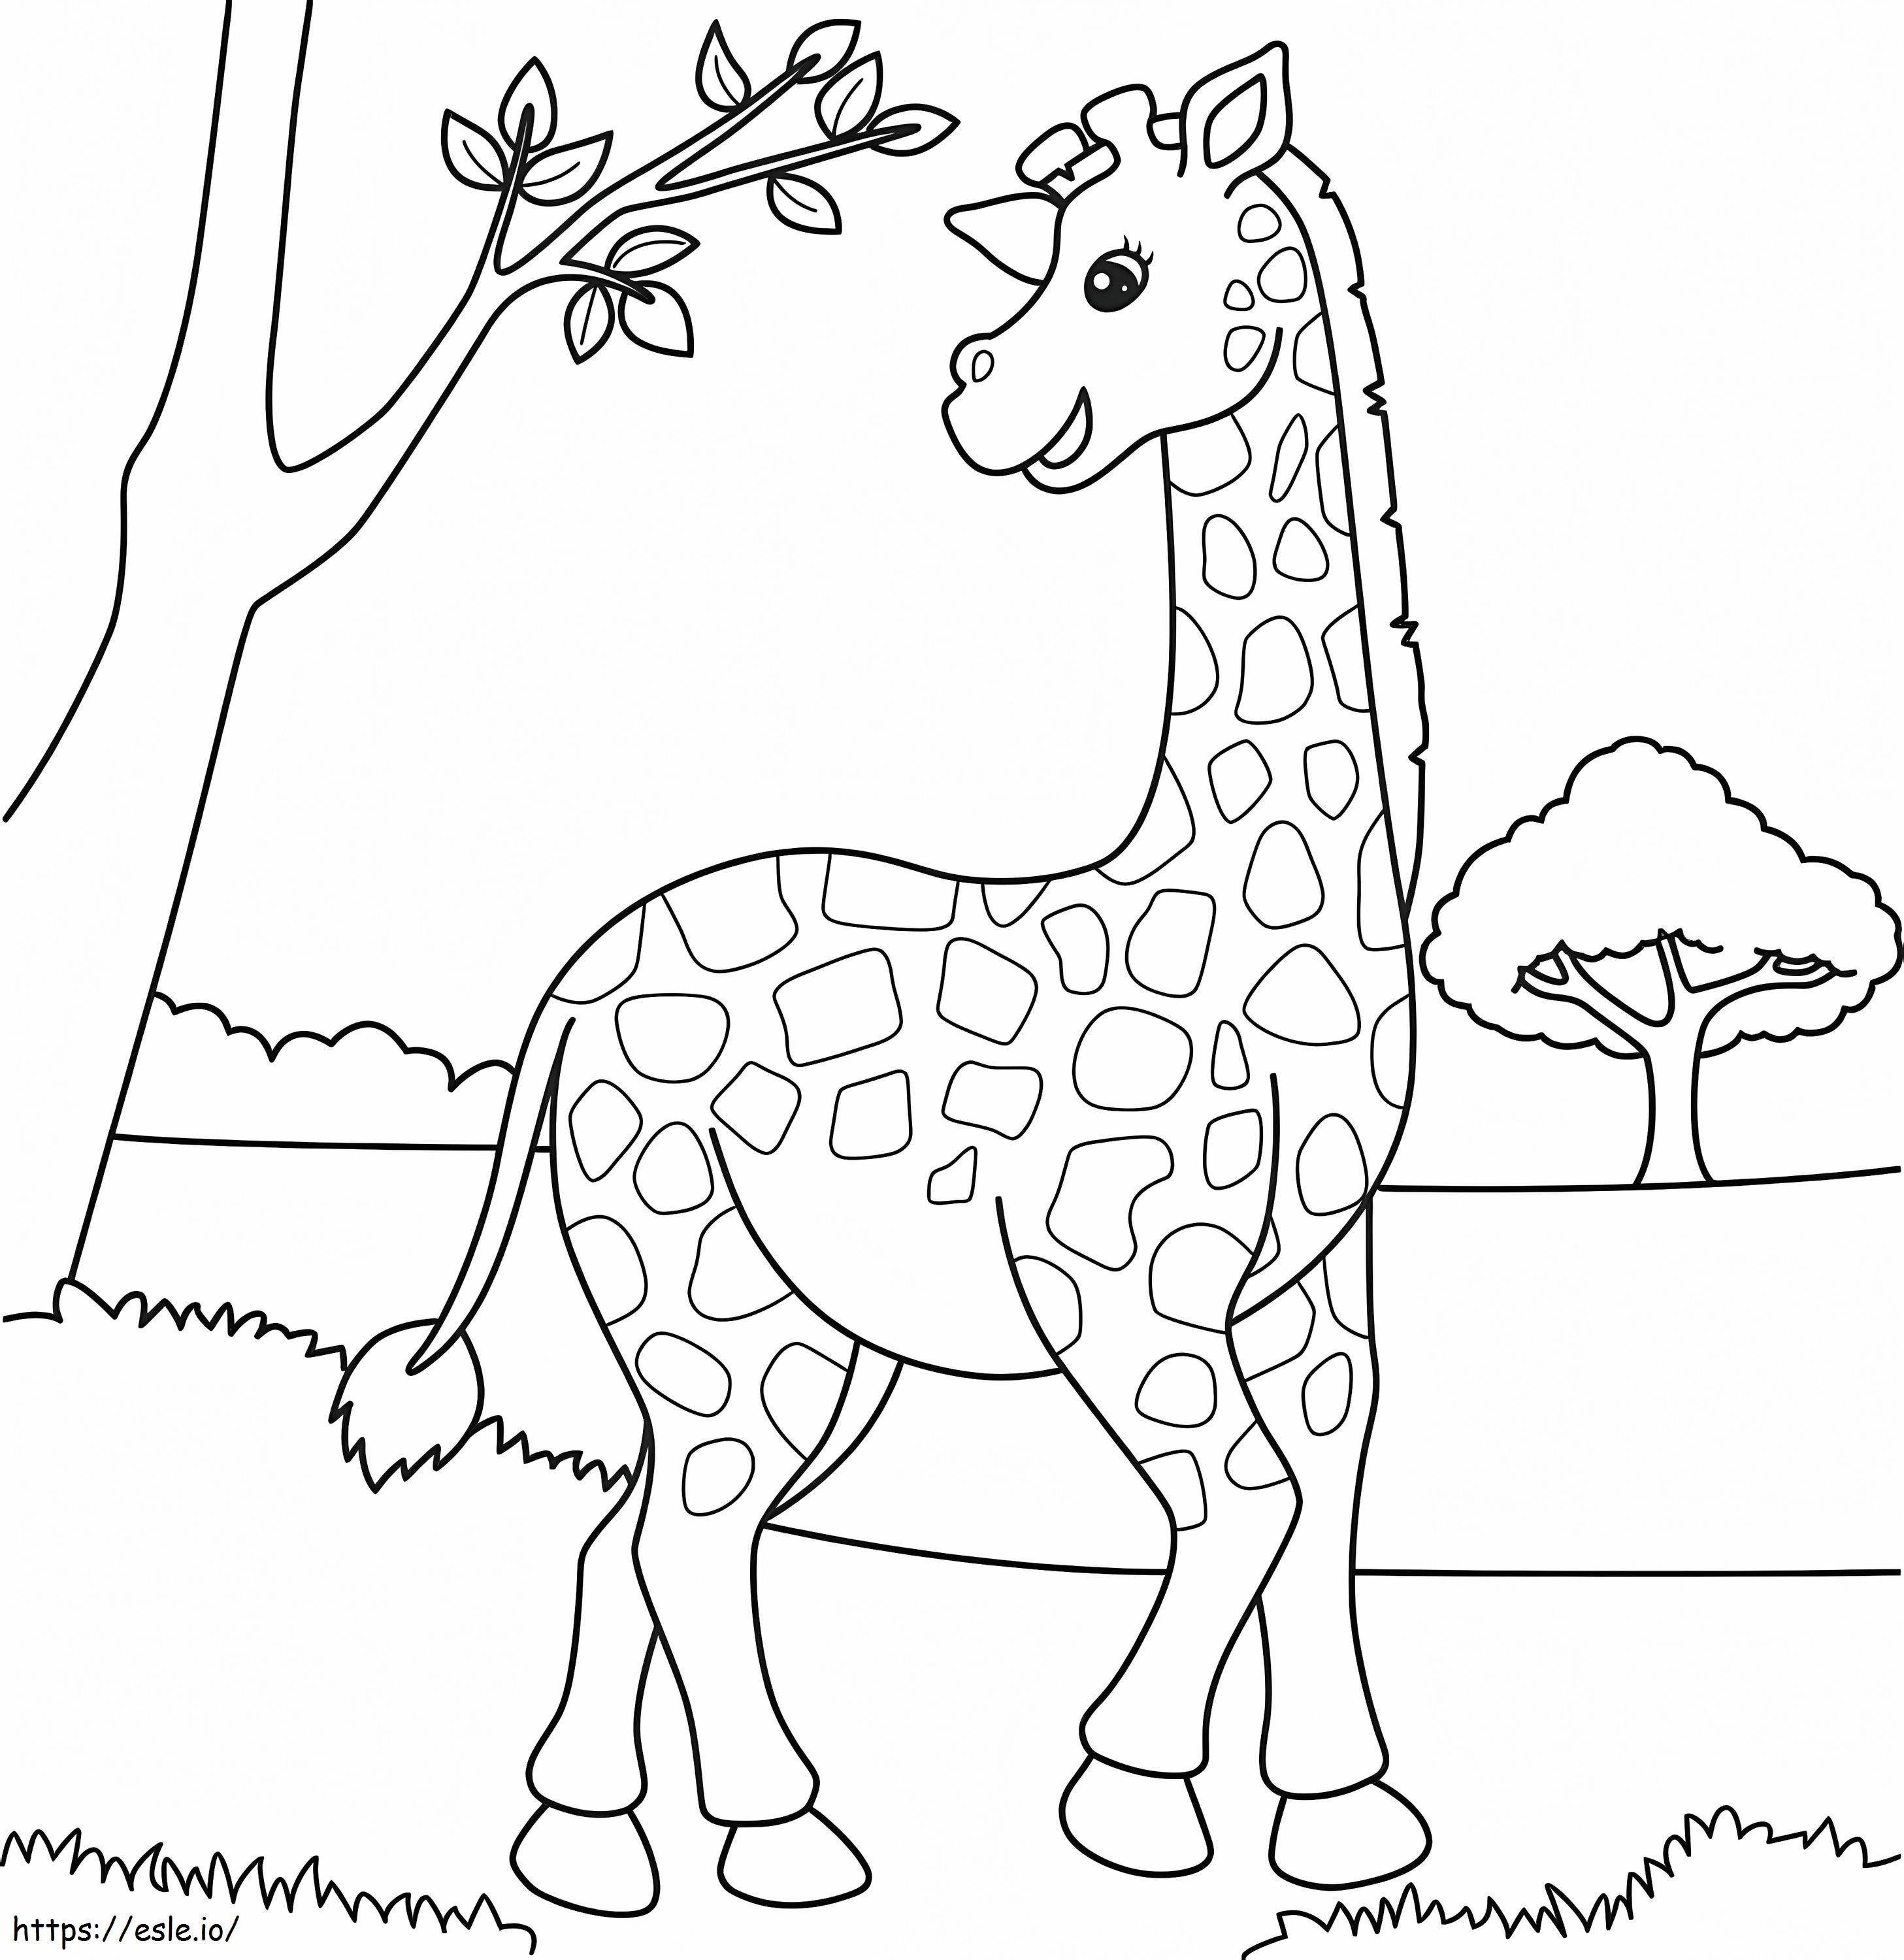 Imágenes gratis de jirafa para colorear